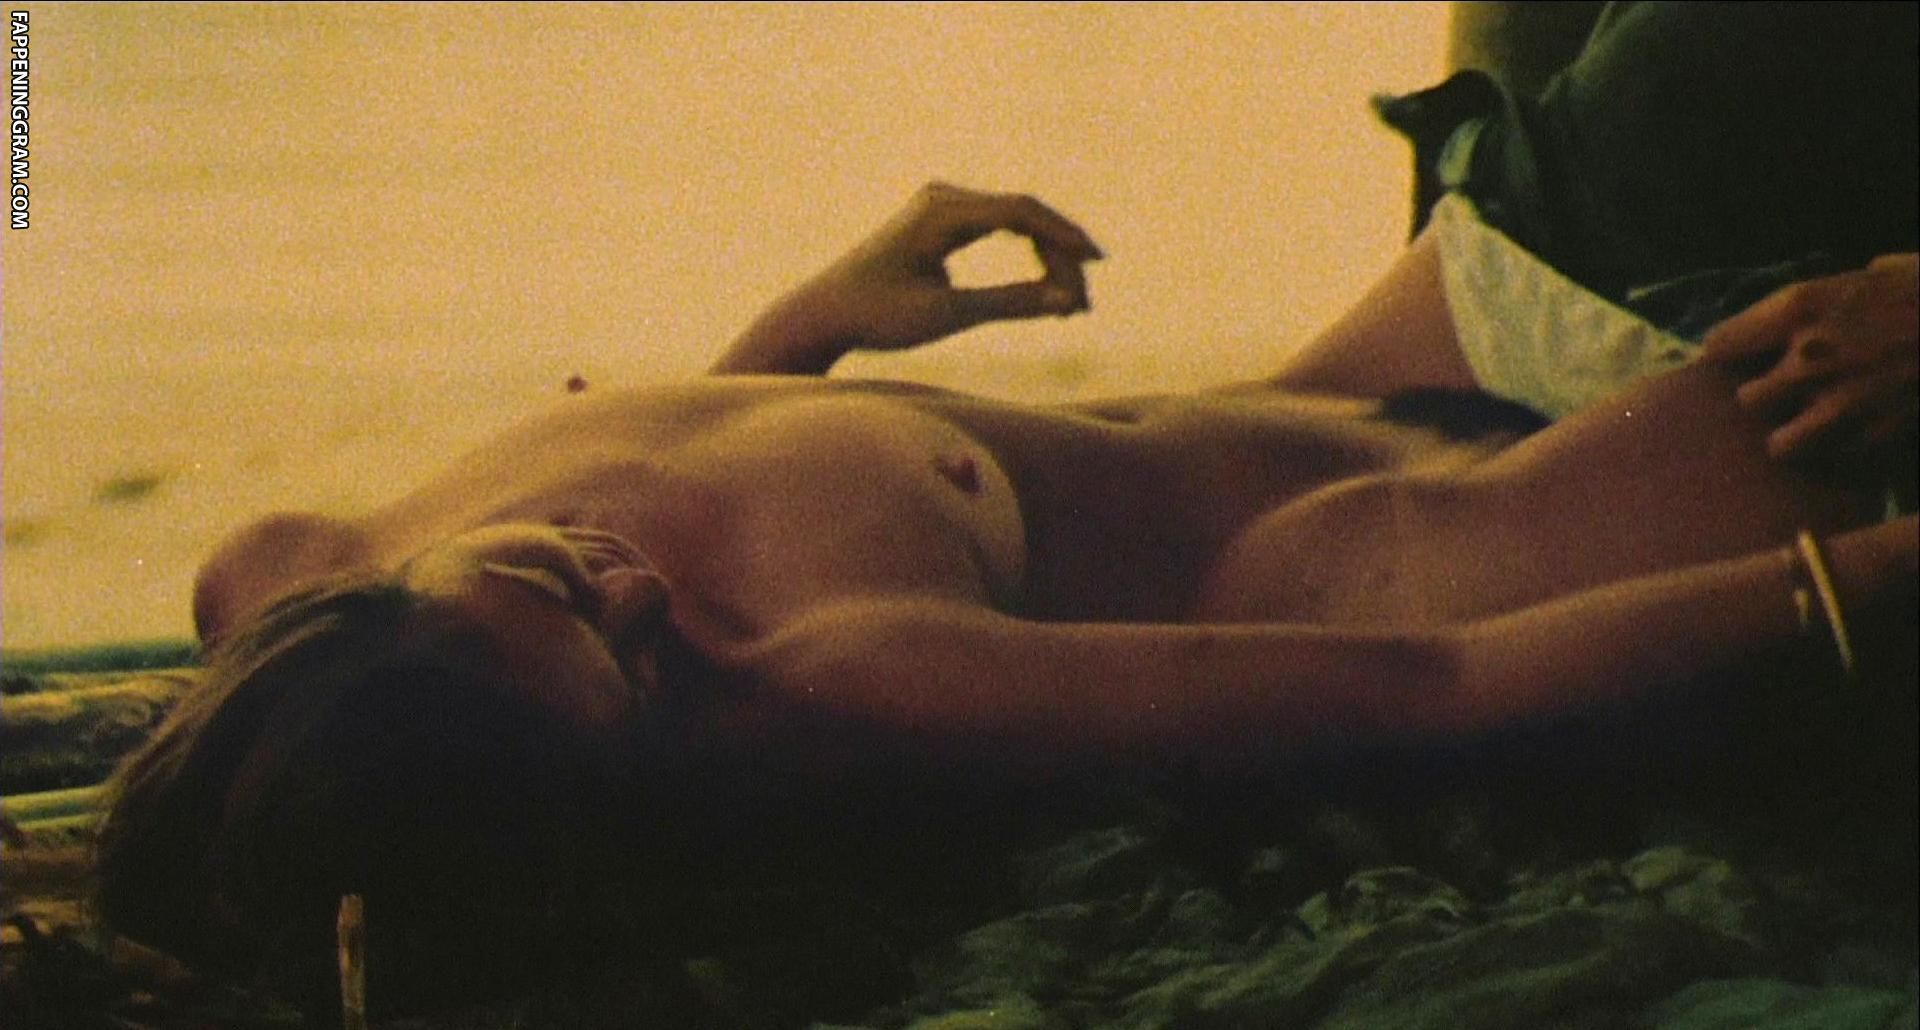 Francesca ciardi nude 👉 👌 Francesca Ciardi nude pics, pagina